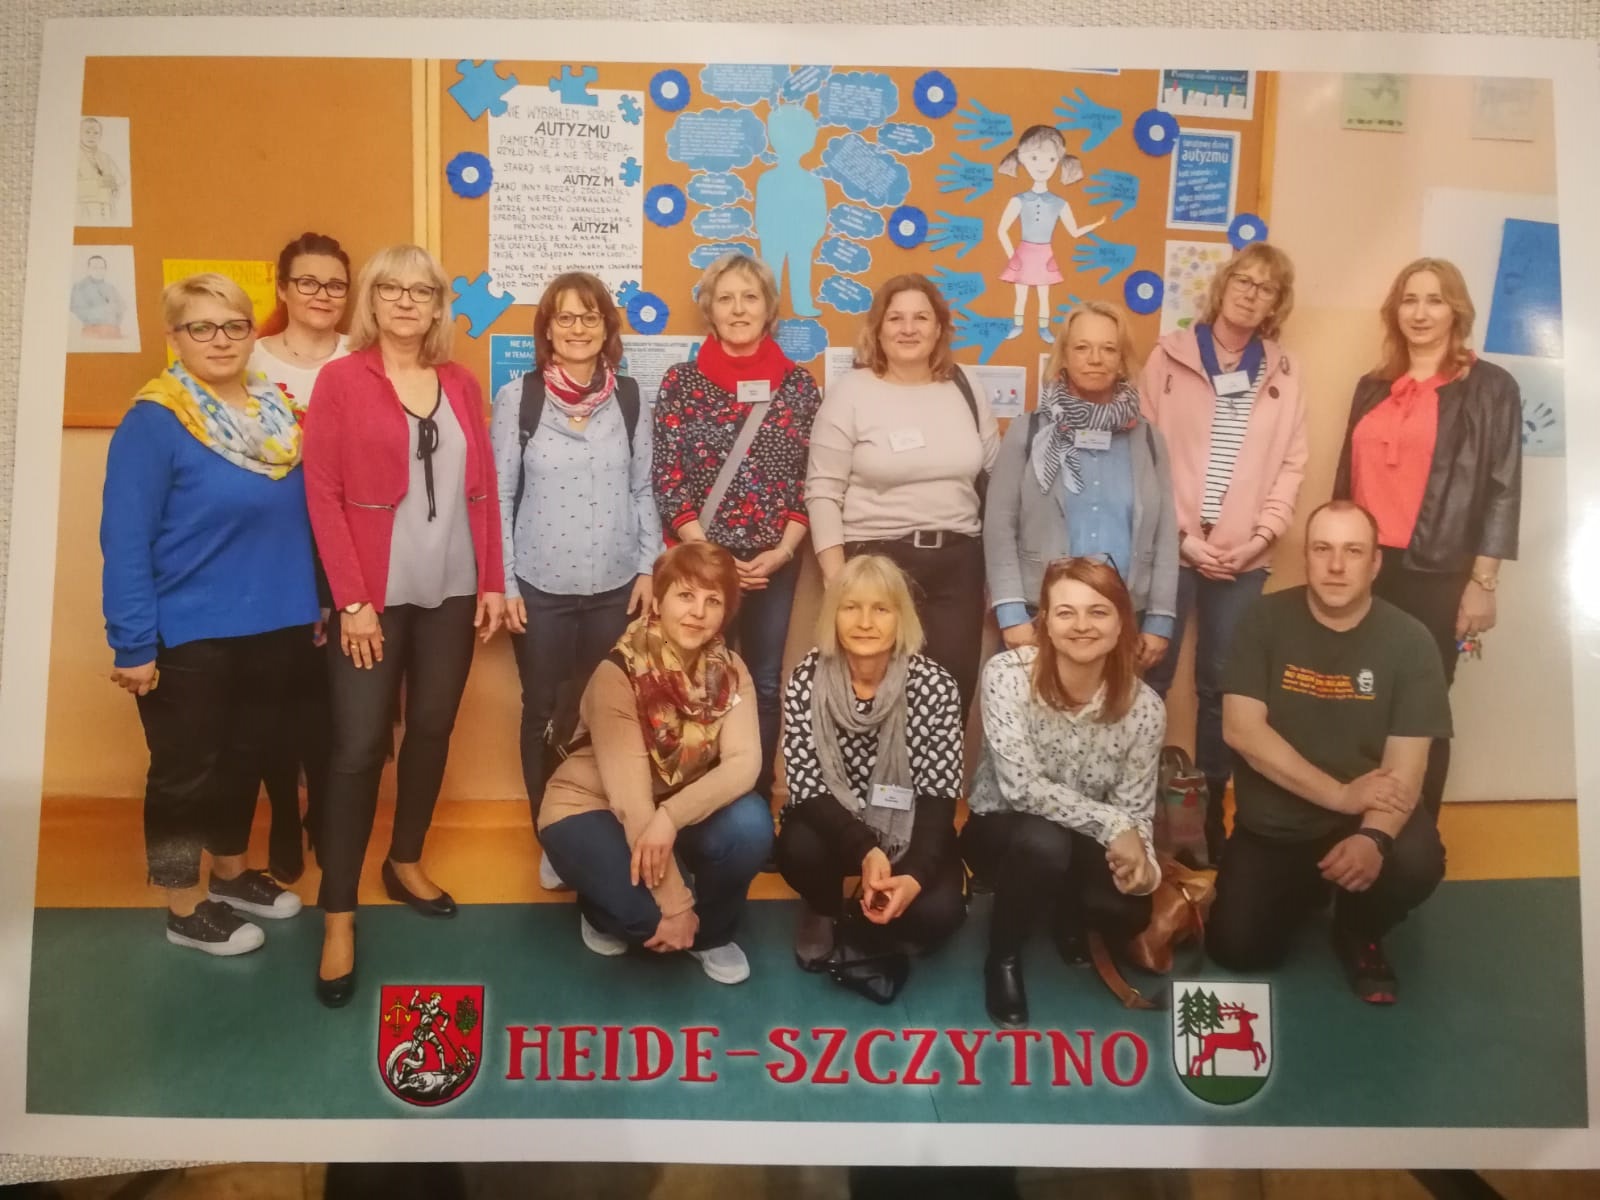 Polen: Fachlicher und inspirierender Austausch im Rahmen des Programms Erasmus+